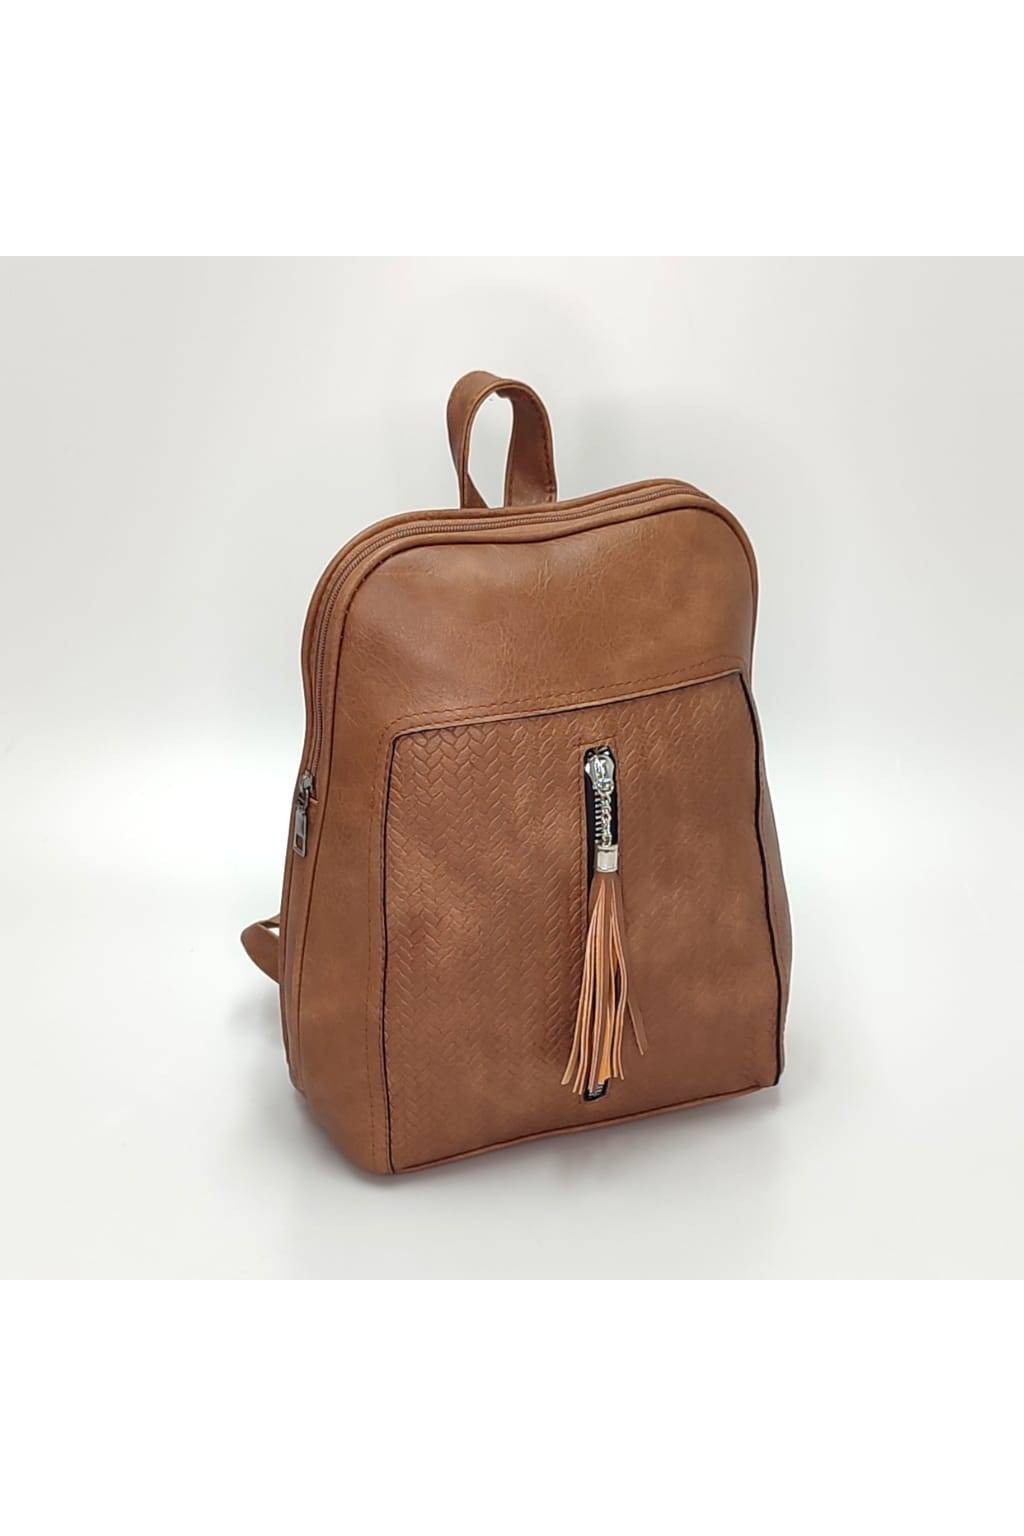 Dámsky ruksak 2548 tmavo béžový www.kabelky vypredaj (2)